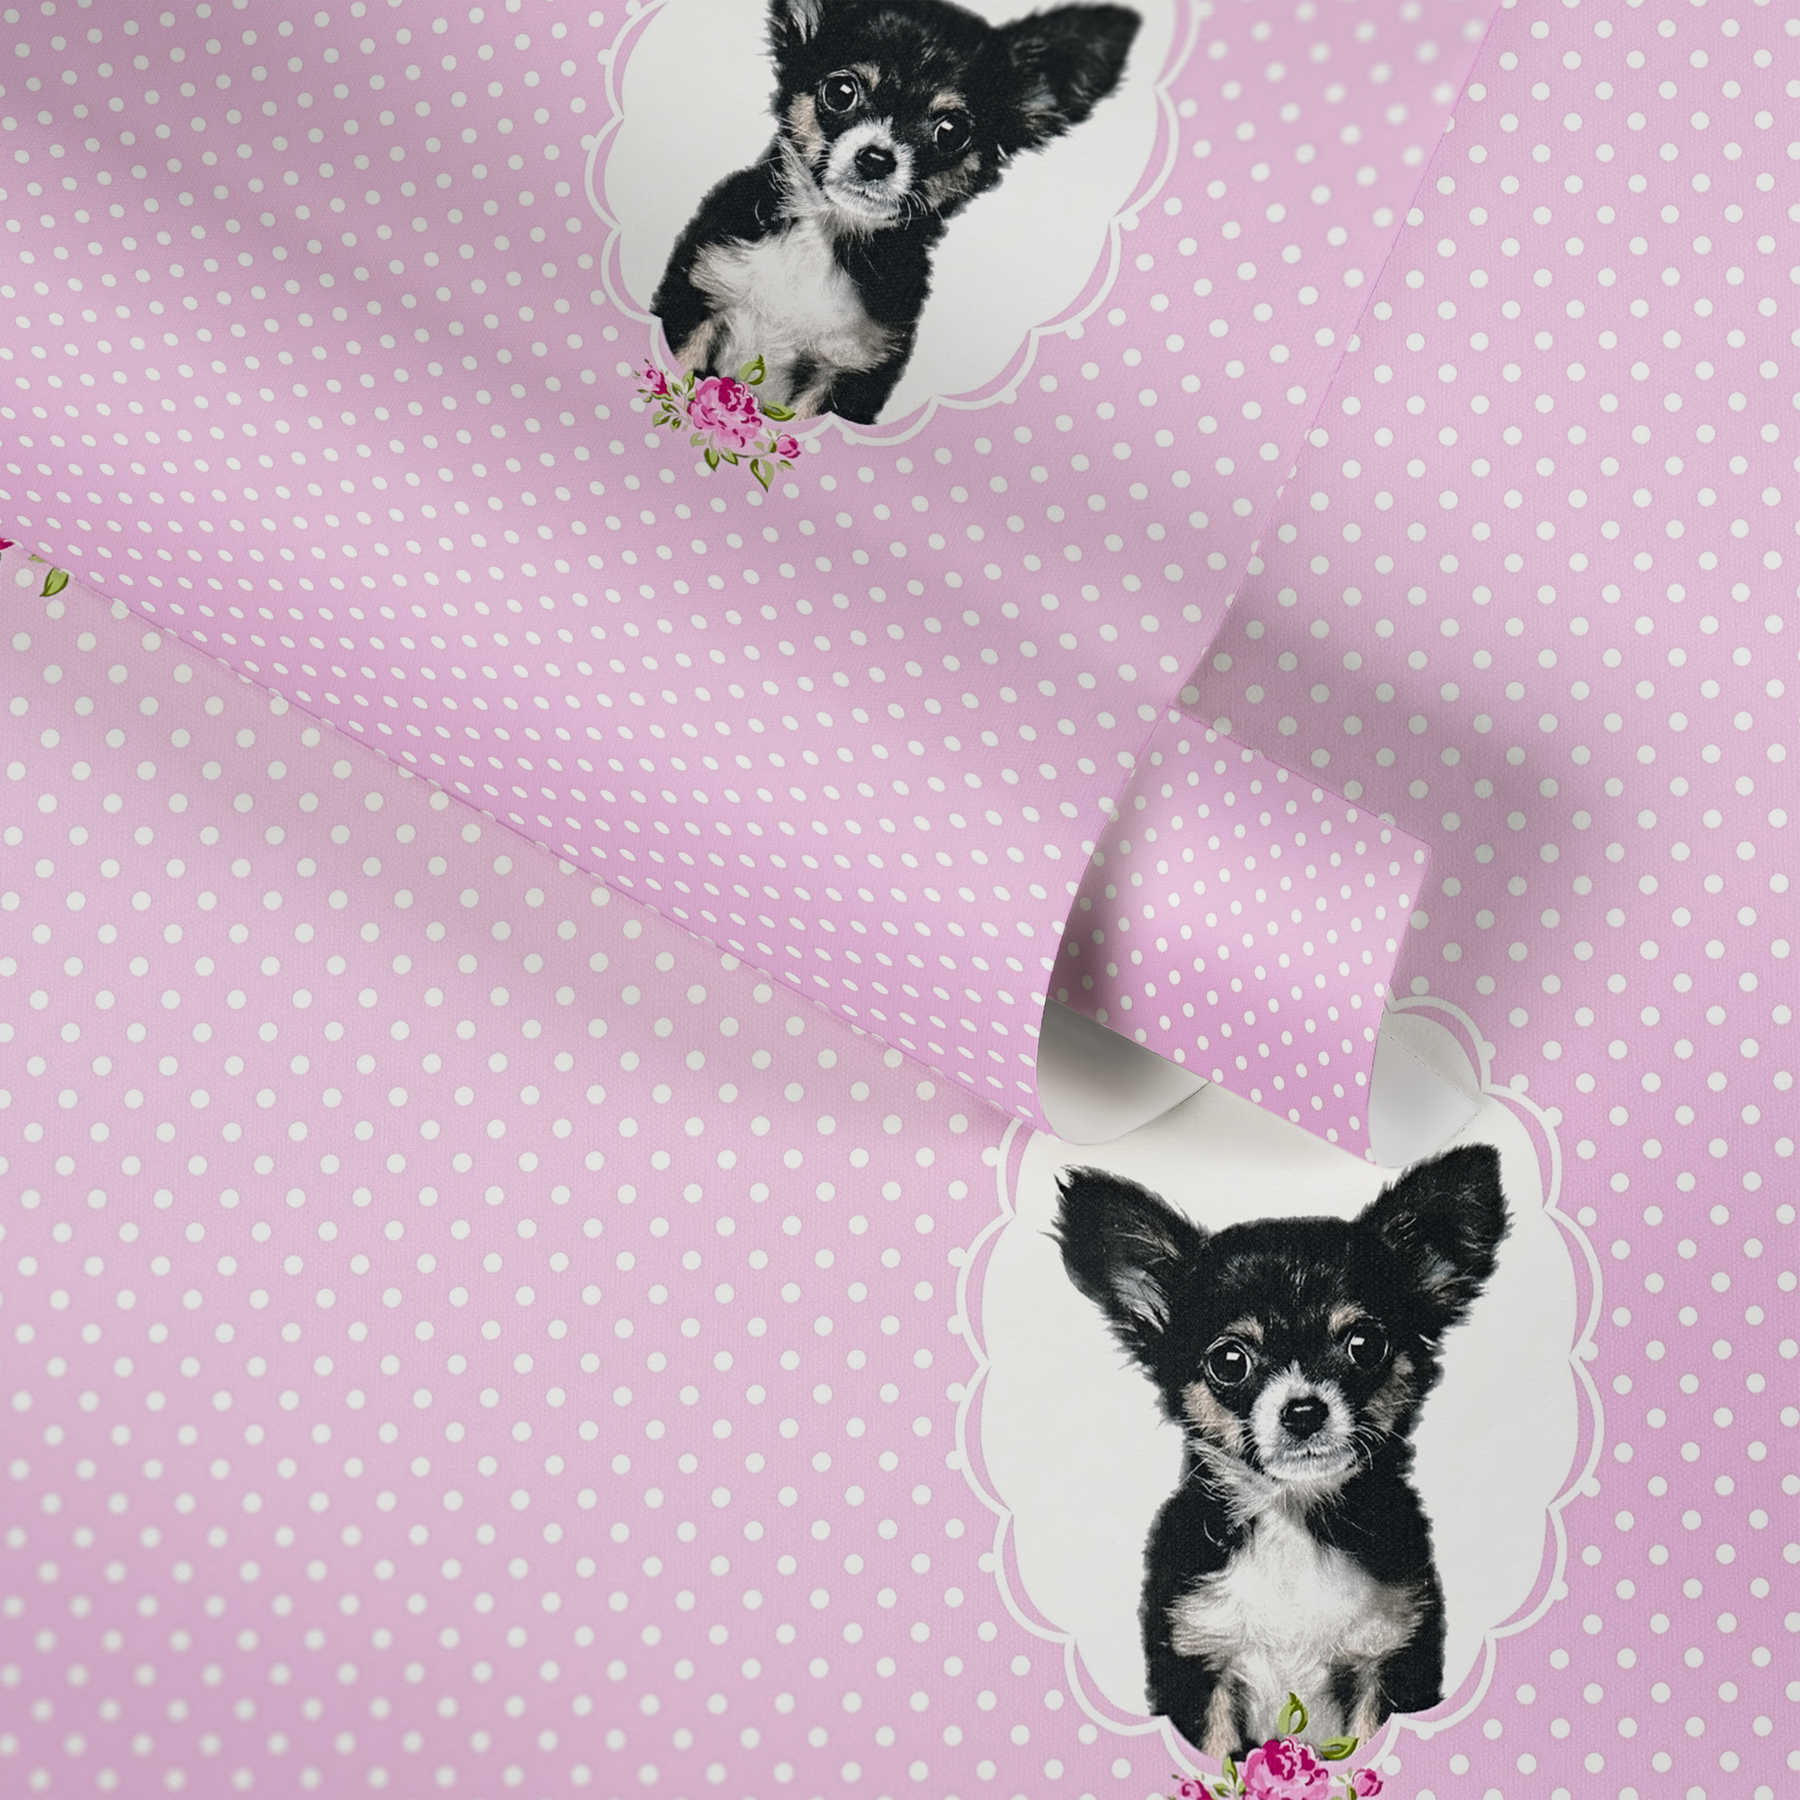             Papel pintado de lunares rosas con retratos de perros - Rosa
        